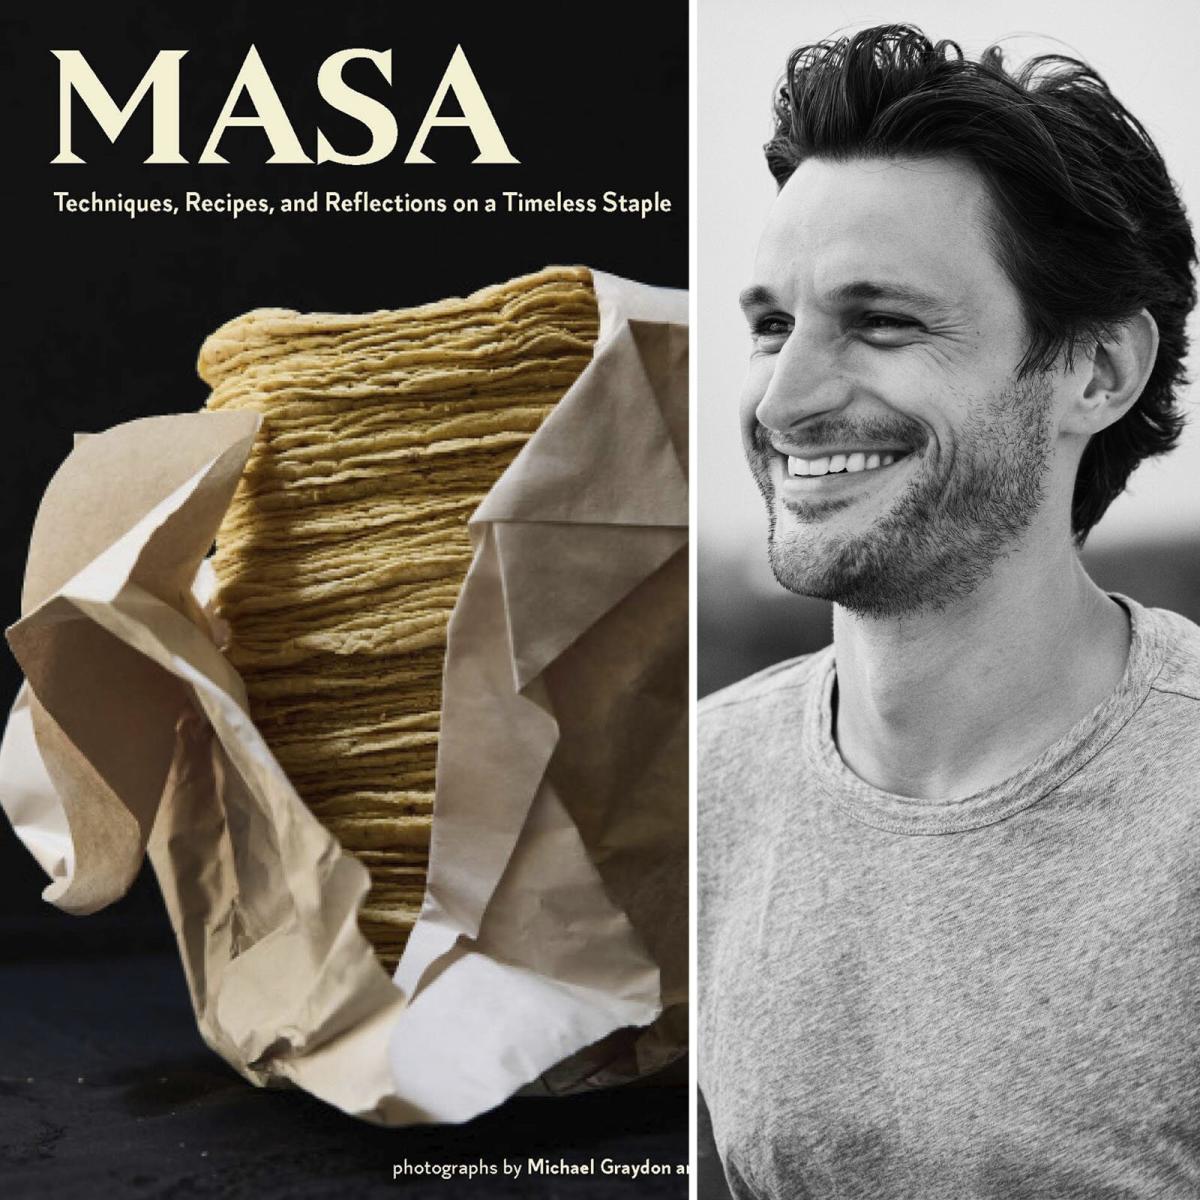 Jorge Gaviria comparte una receta de chilpachole y nos habla en exclusiva  de su nuevo libro MASA